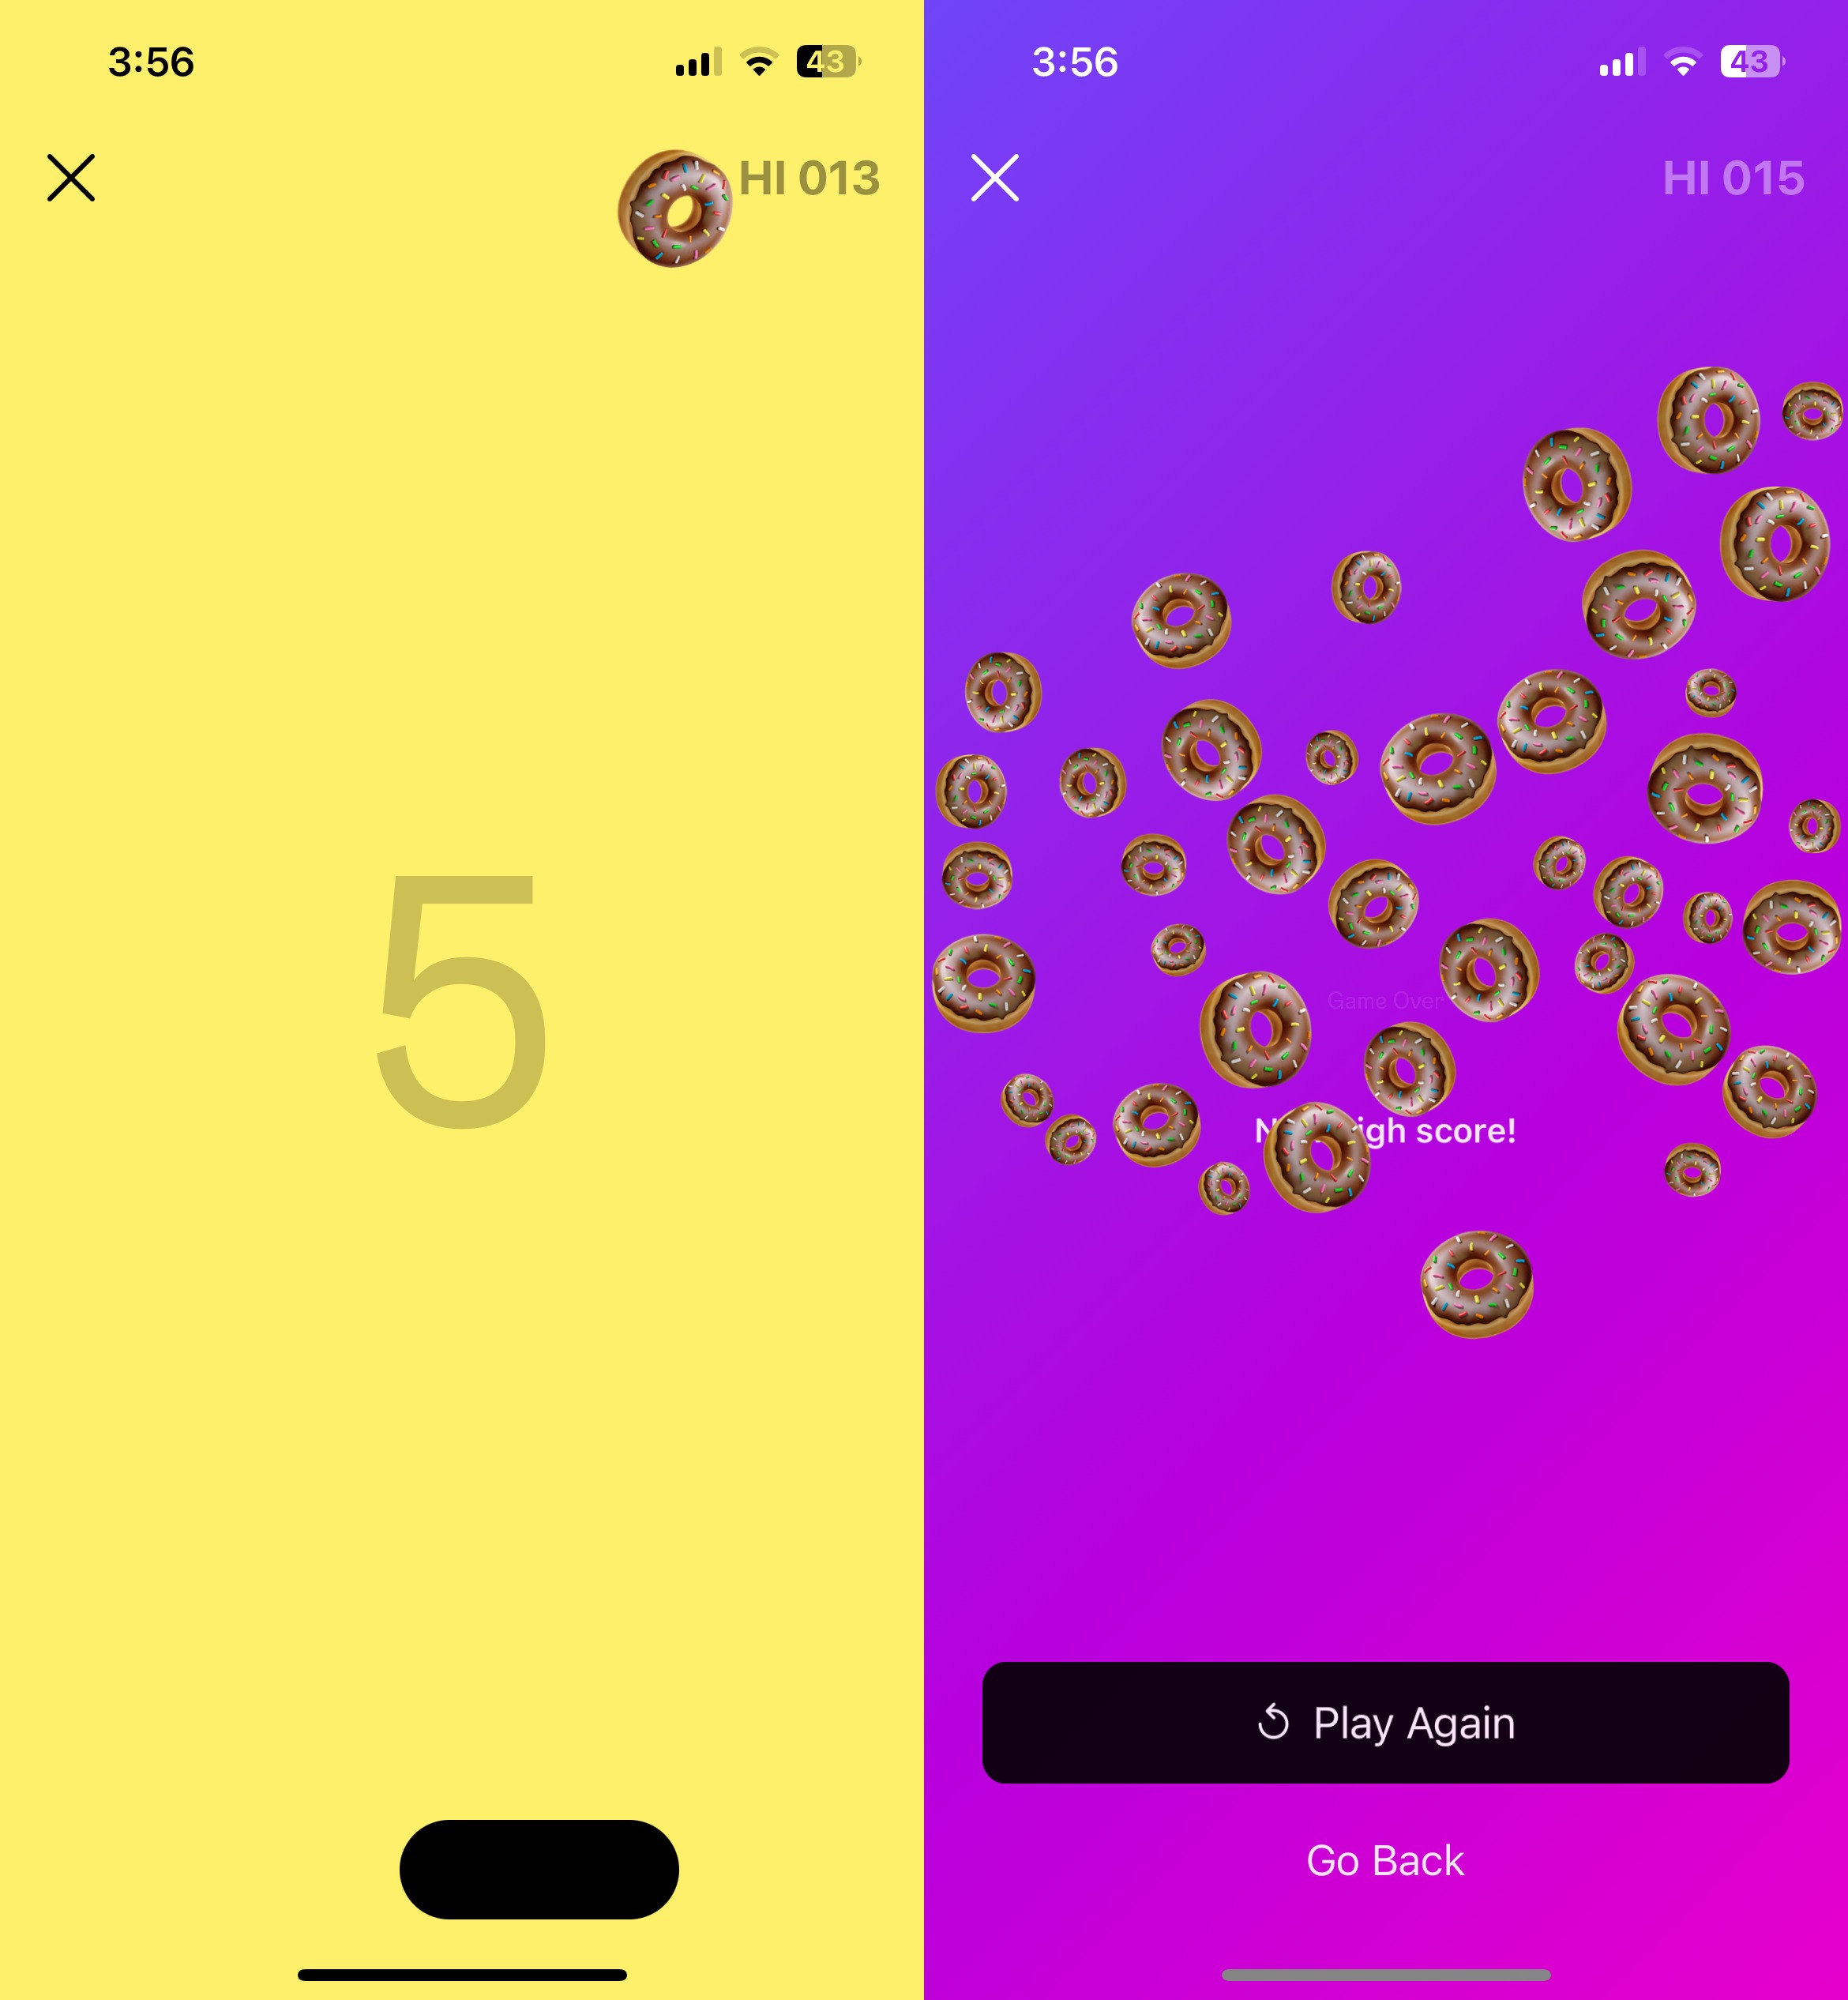 Dos capturas de pantalla, una al lado de la otra, del juego oculto de Instagram.  La primera imagen muestra un emoji de dona rebotando en una paleta.  La segunda imagen muestra la pantalla de fin del juego.